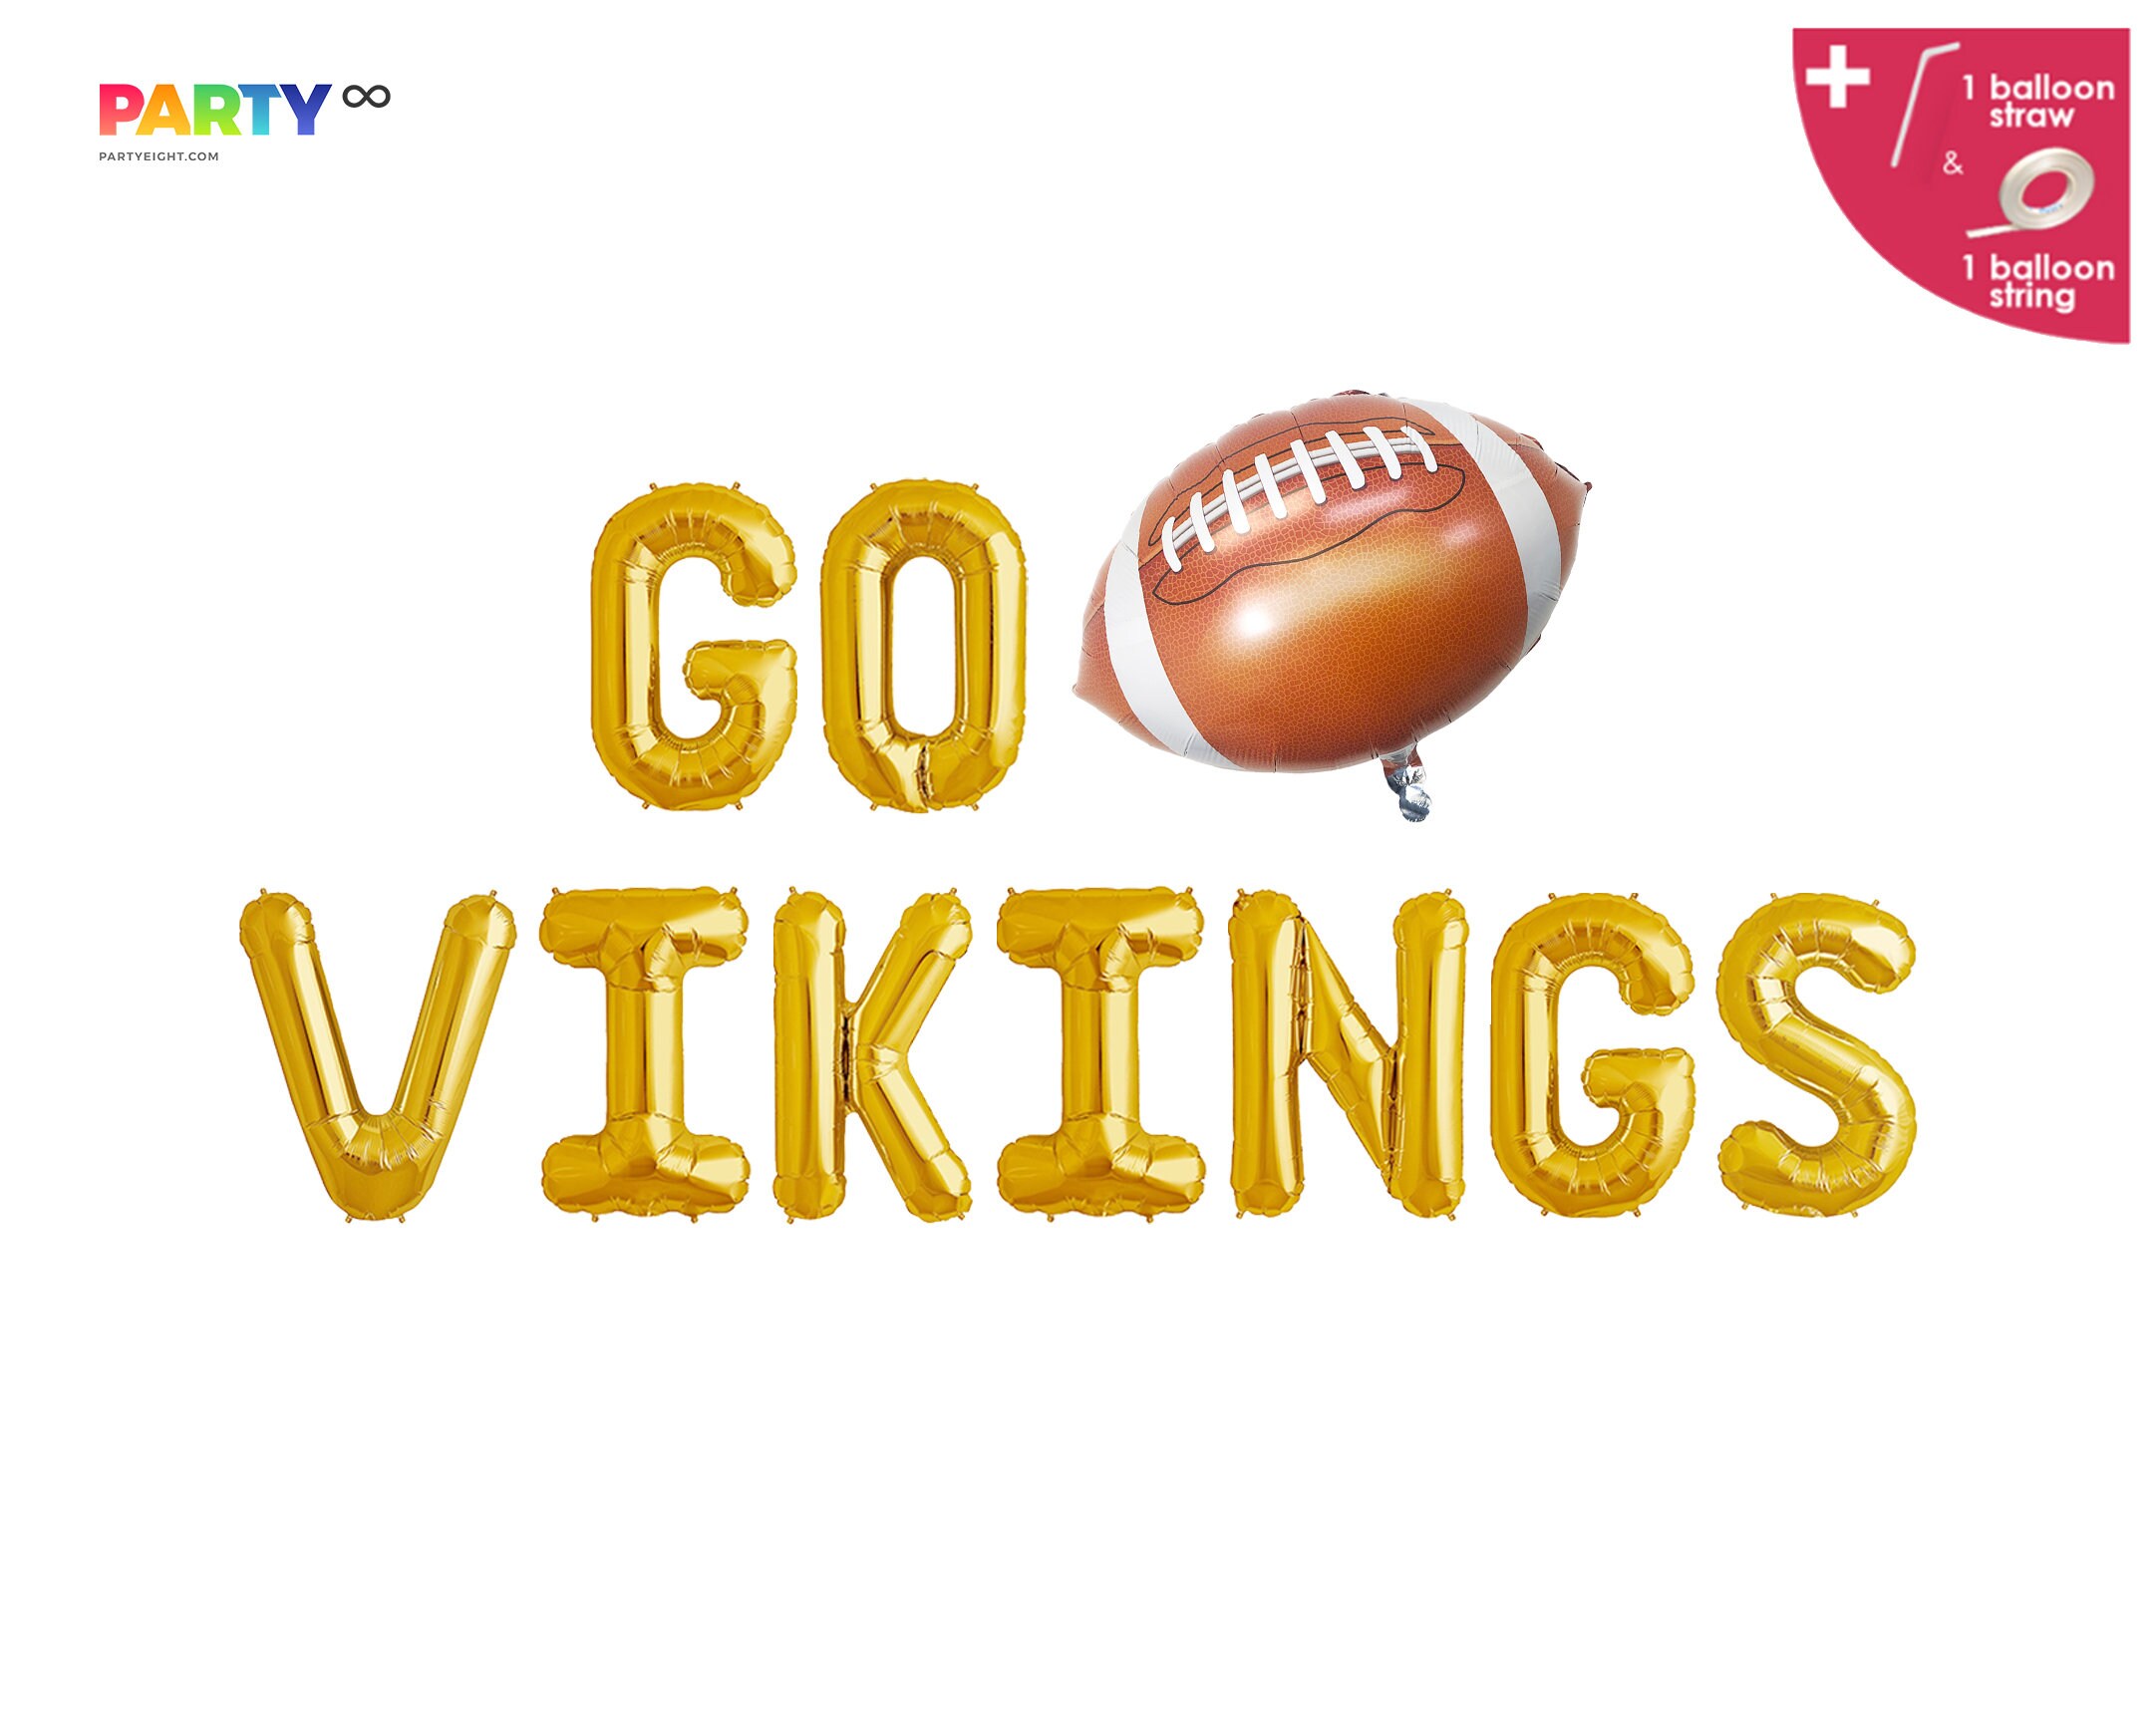 Minnesota Vikings Balloon - Football